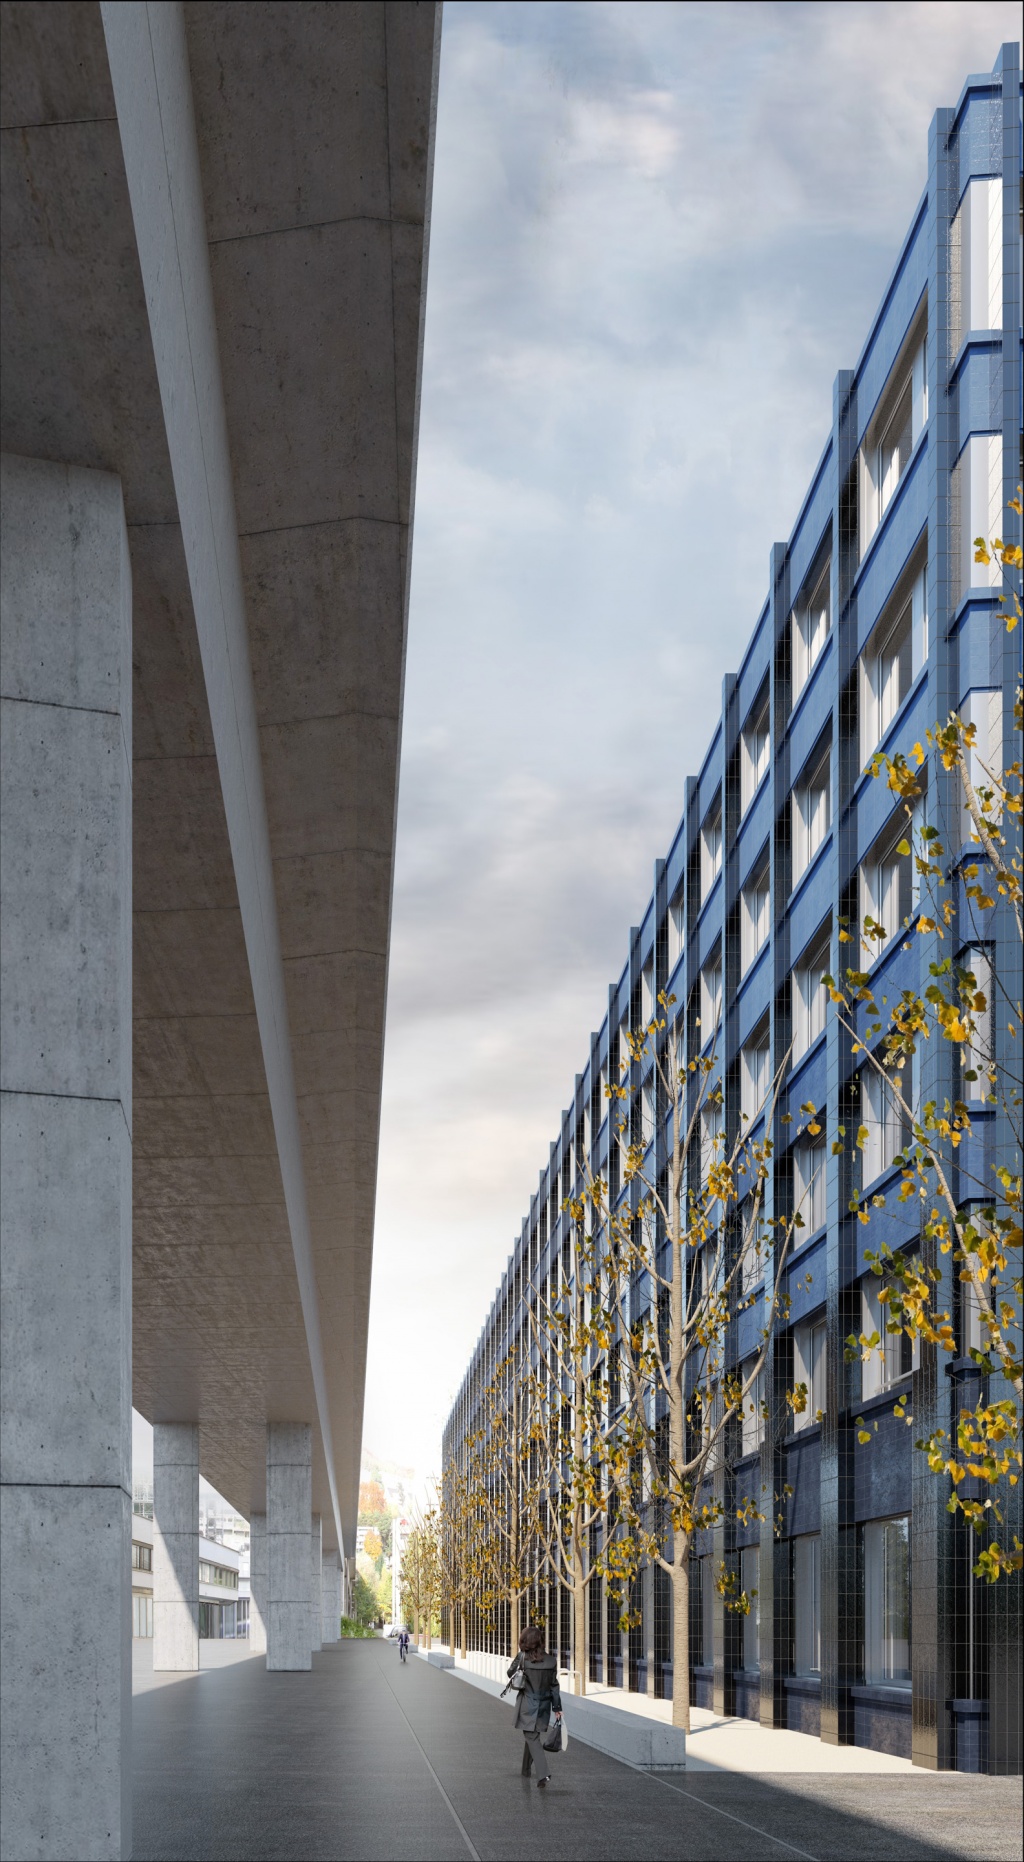 Visualisierung Wettbewerb Kriminalpolizei Zürich
Anette Gigon / Mike Guyer Architekten 2017